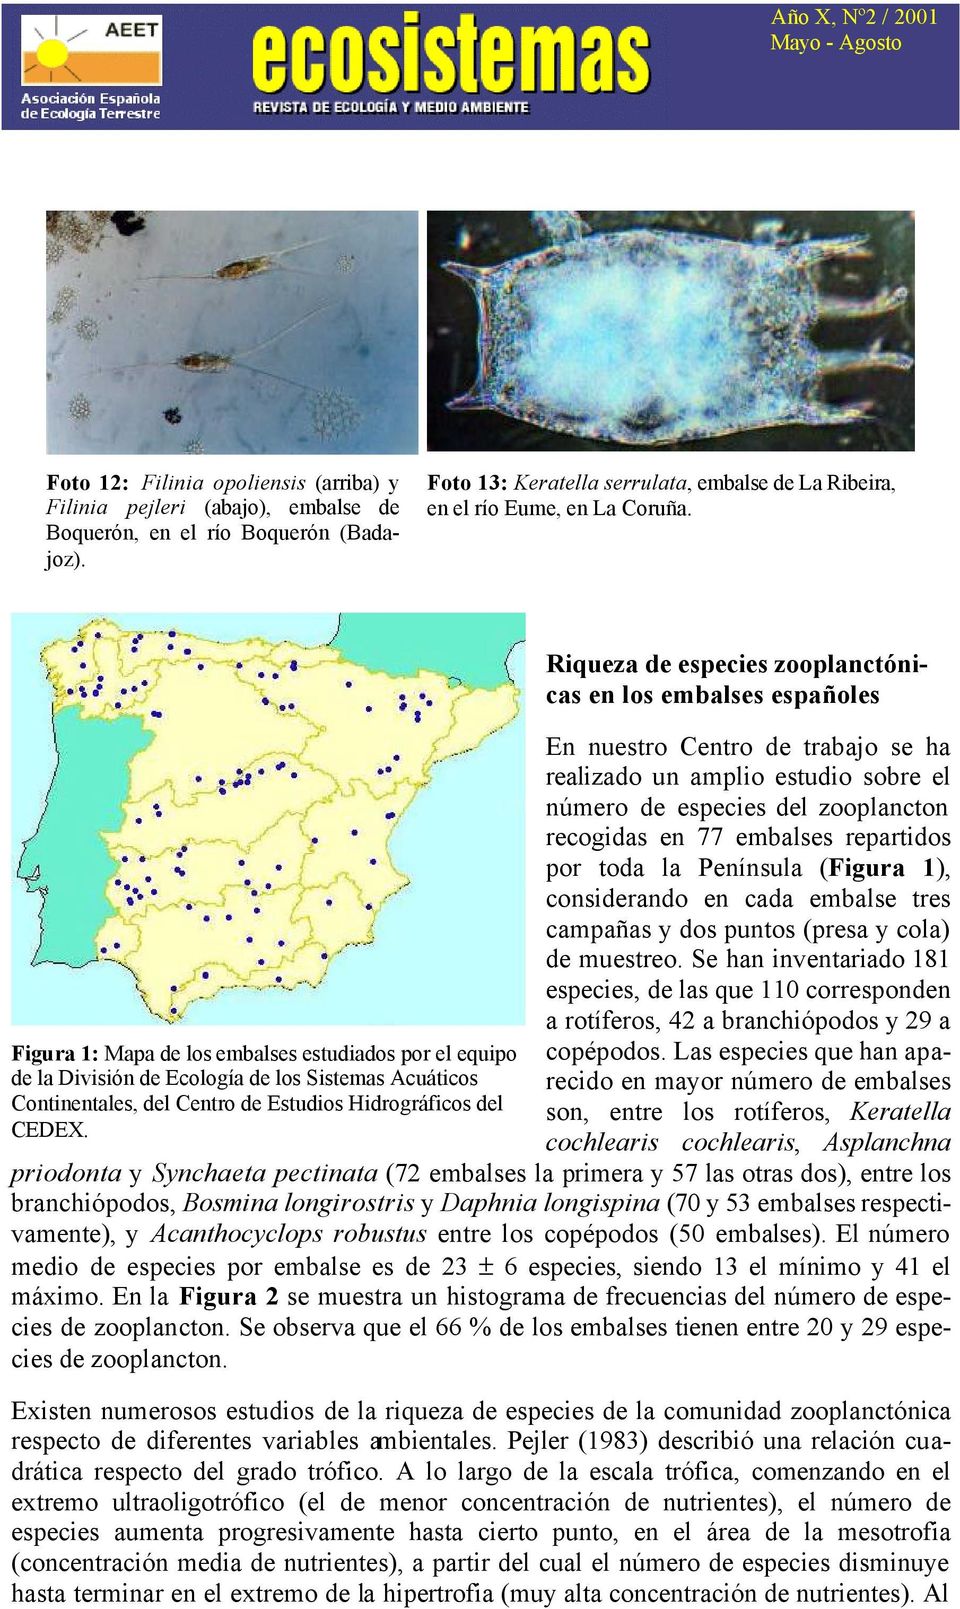 Riqueza de especies zooplanctónicas en los embalses españoles En nuestro Centro de trabajo se ha realizado un amplio estudio sobre el número de especies del zooplancton recogidas en 77 embalses